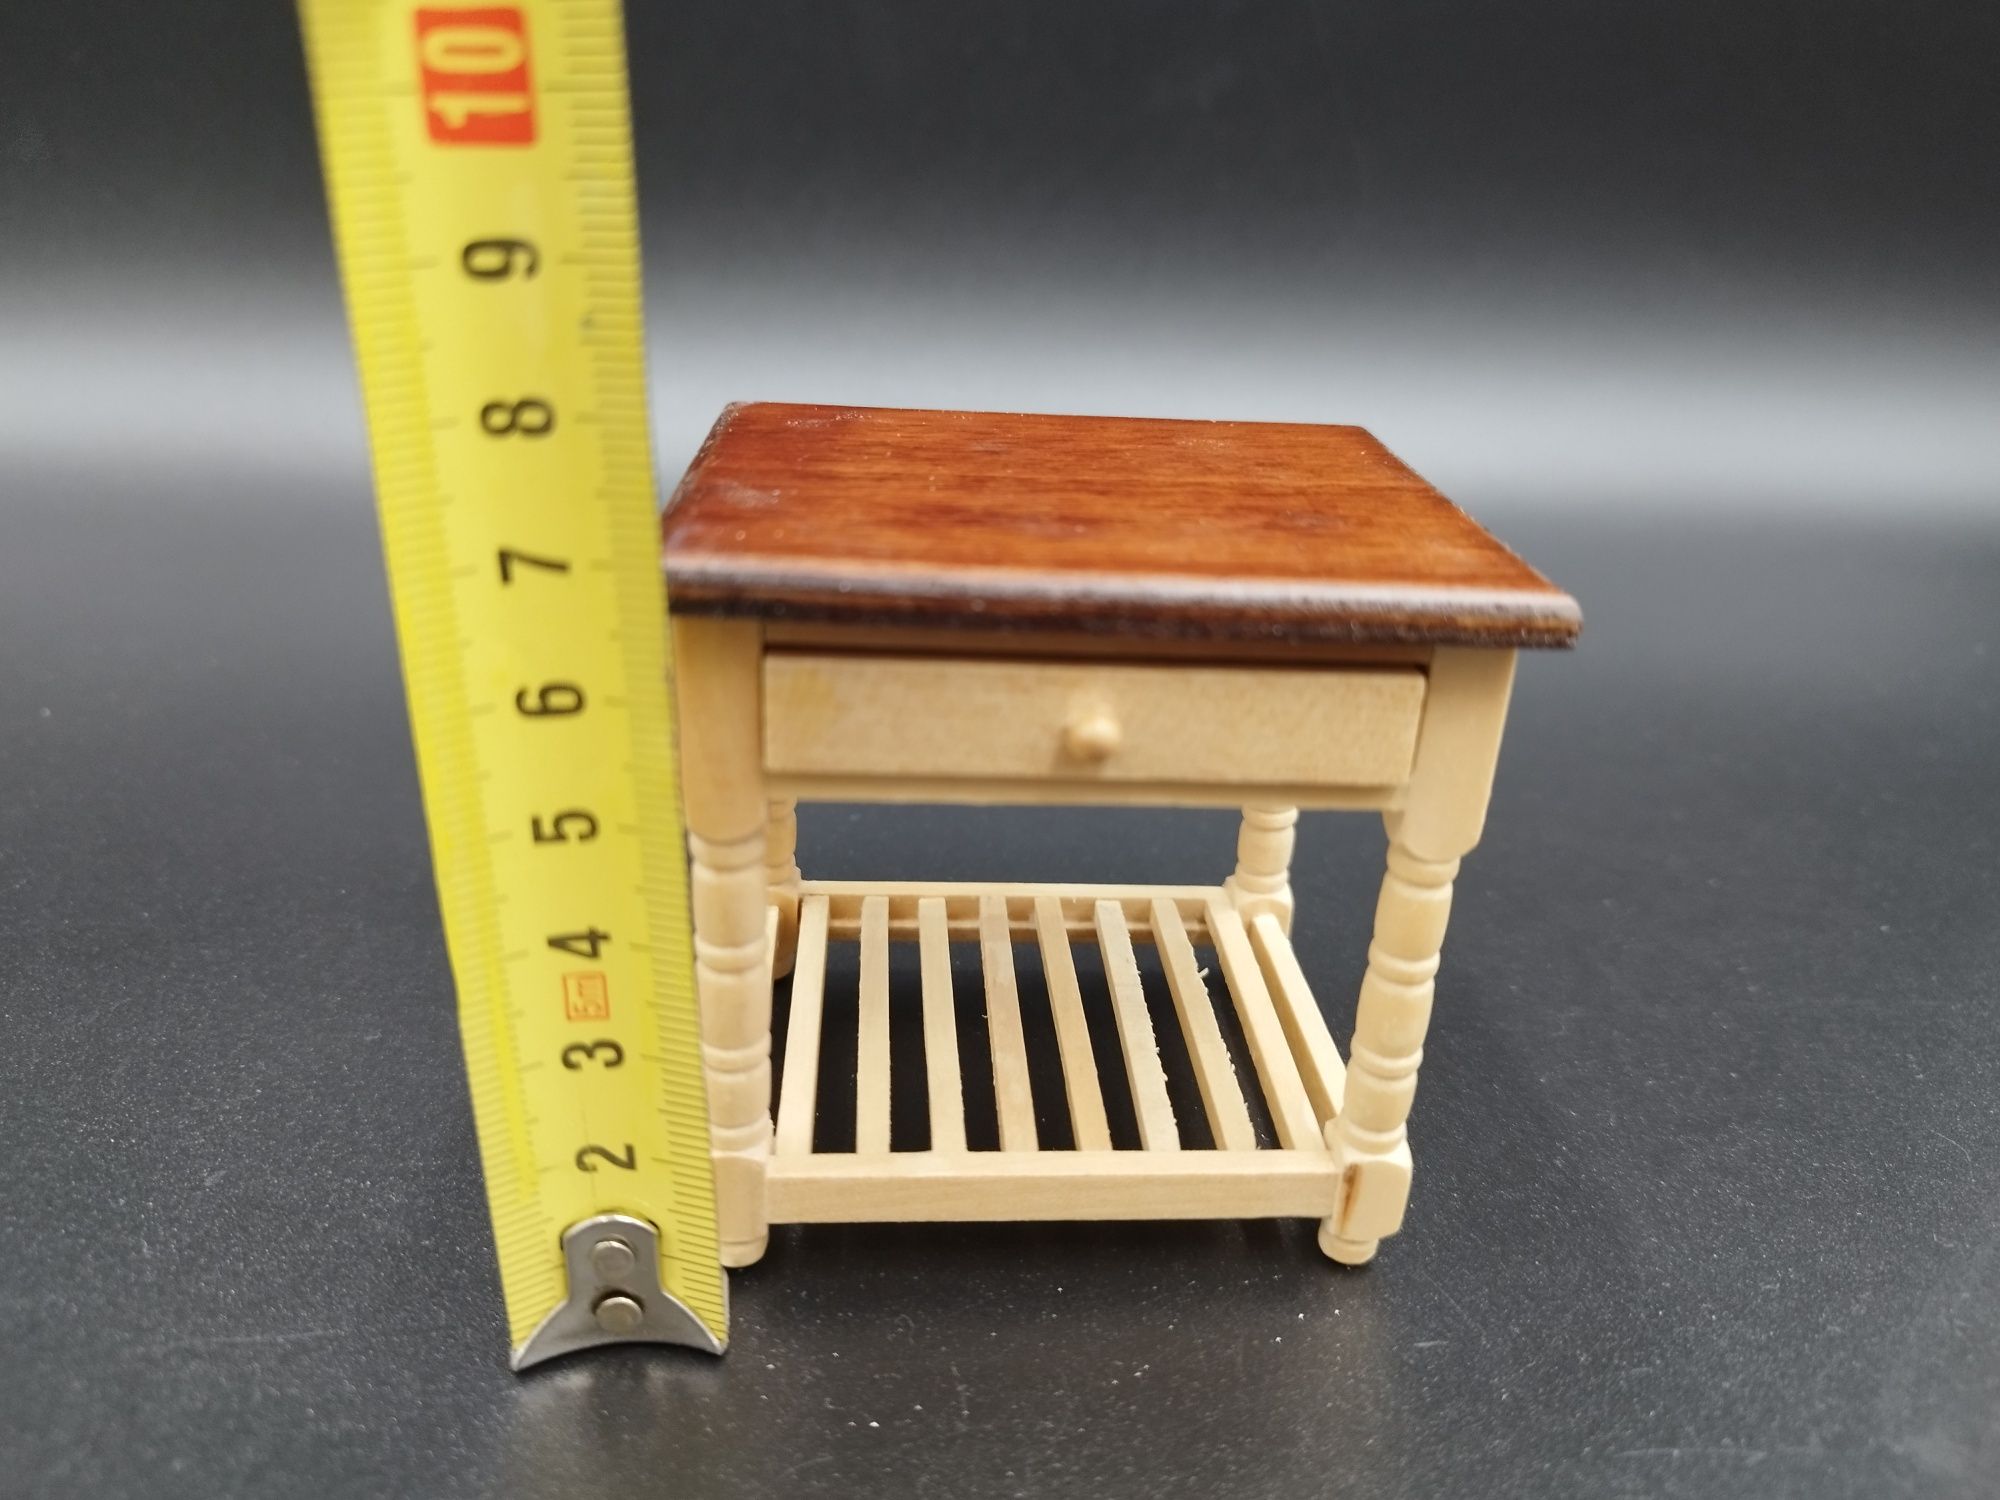 Mini mebelki stolik z jedną szuflą skala 1:12